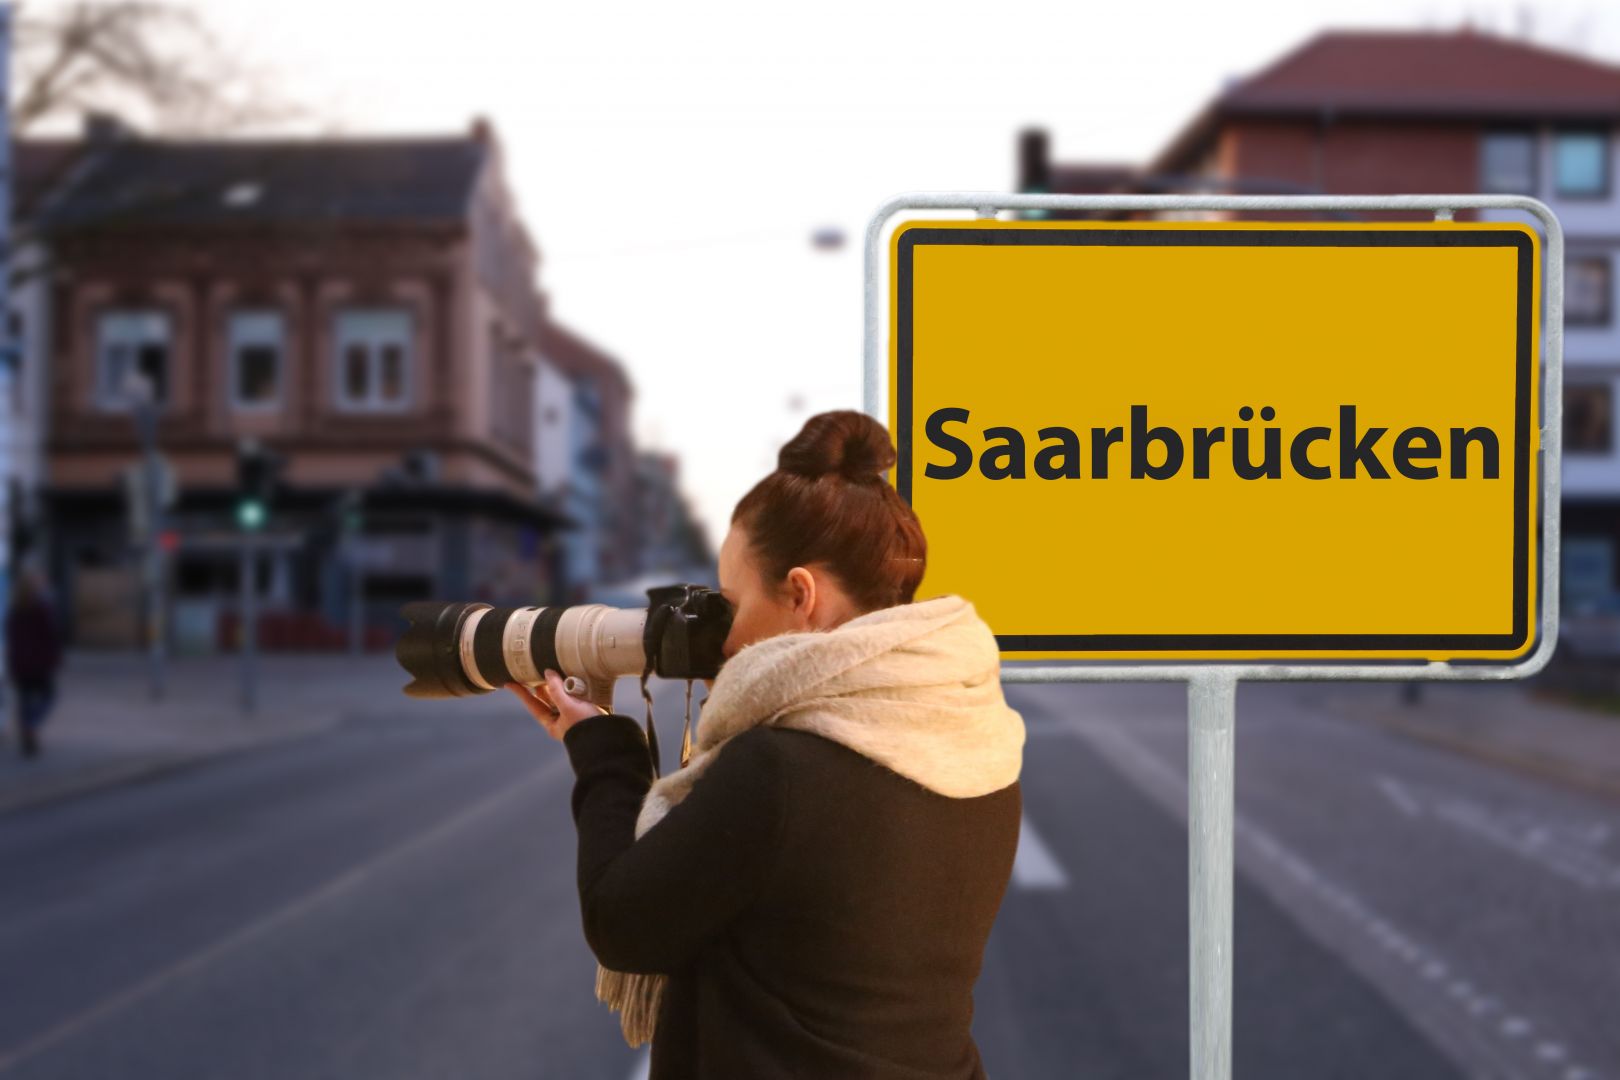 Saarbrücken und Umgebung